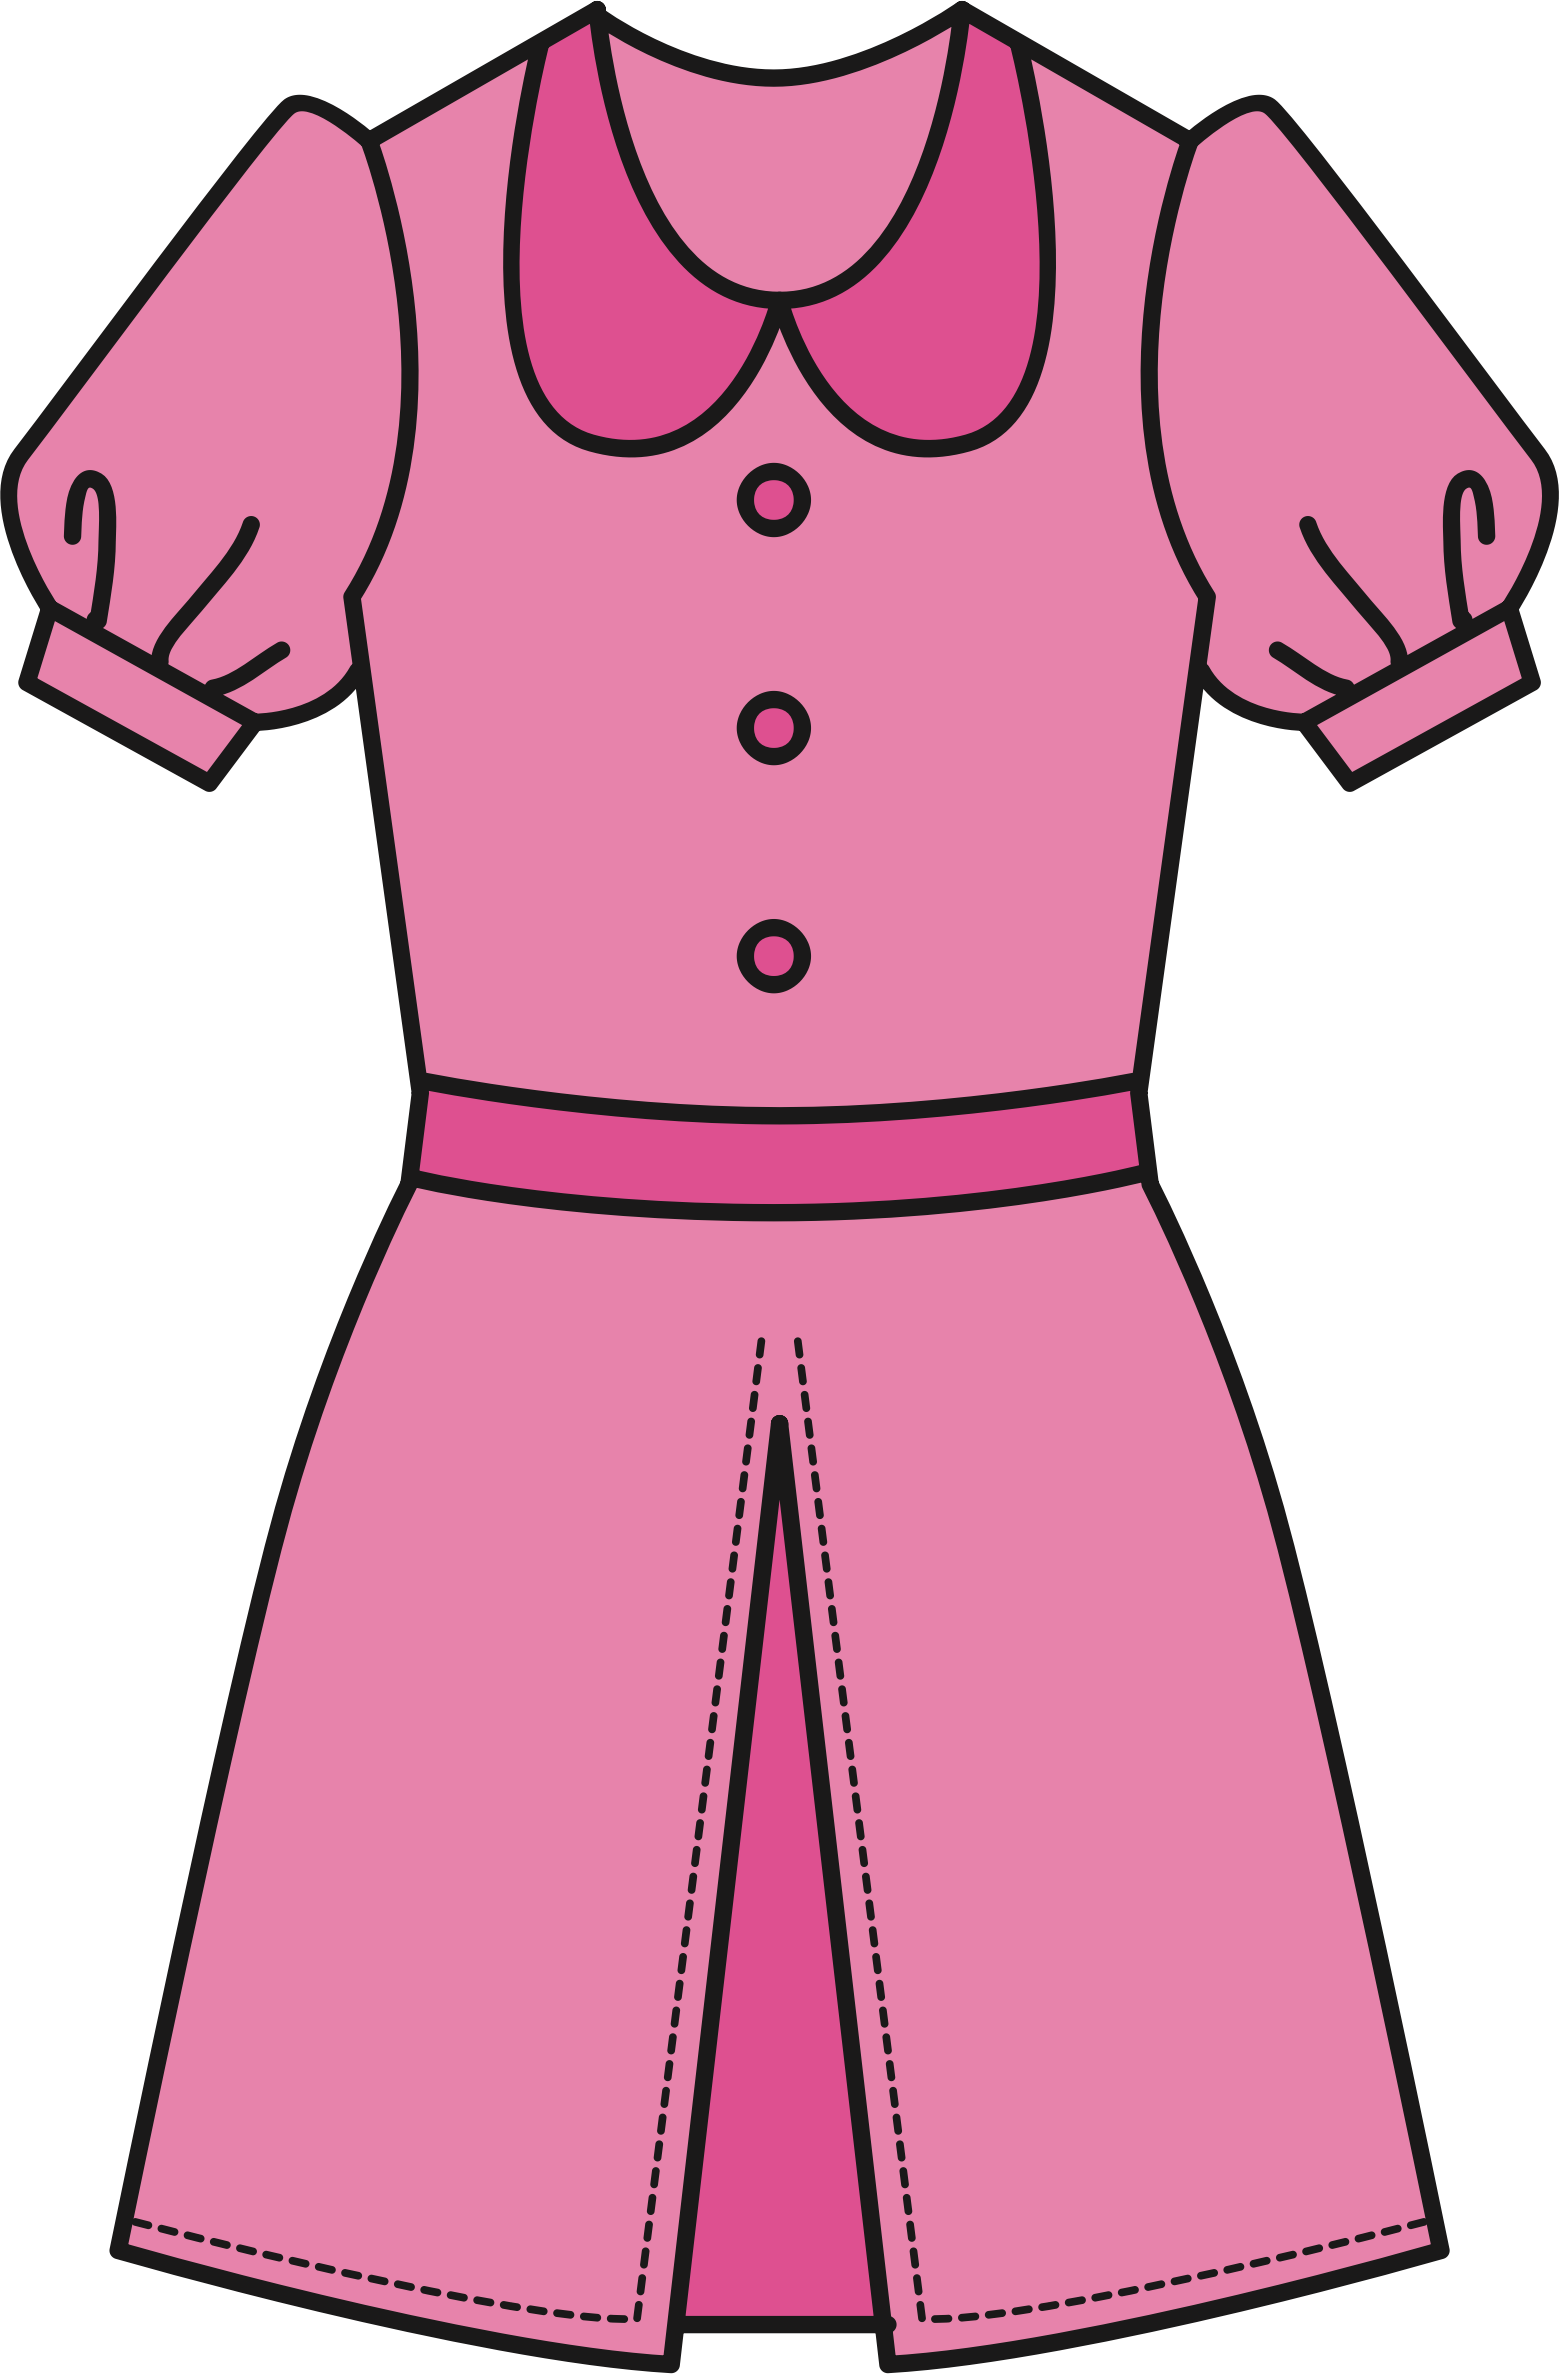 Big Image - Clip Art Pink Dress - (1559x2374) Png Clipart Download. 